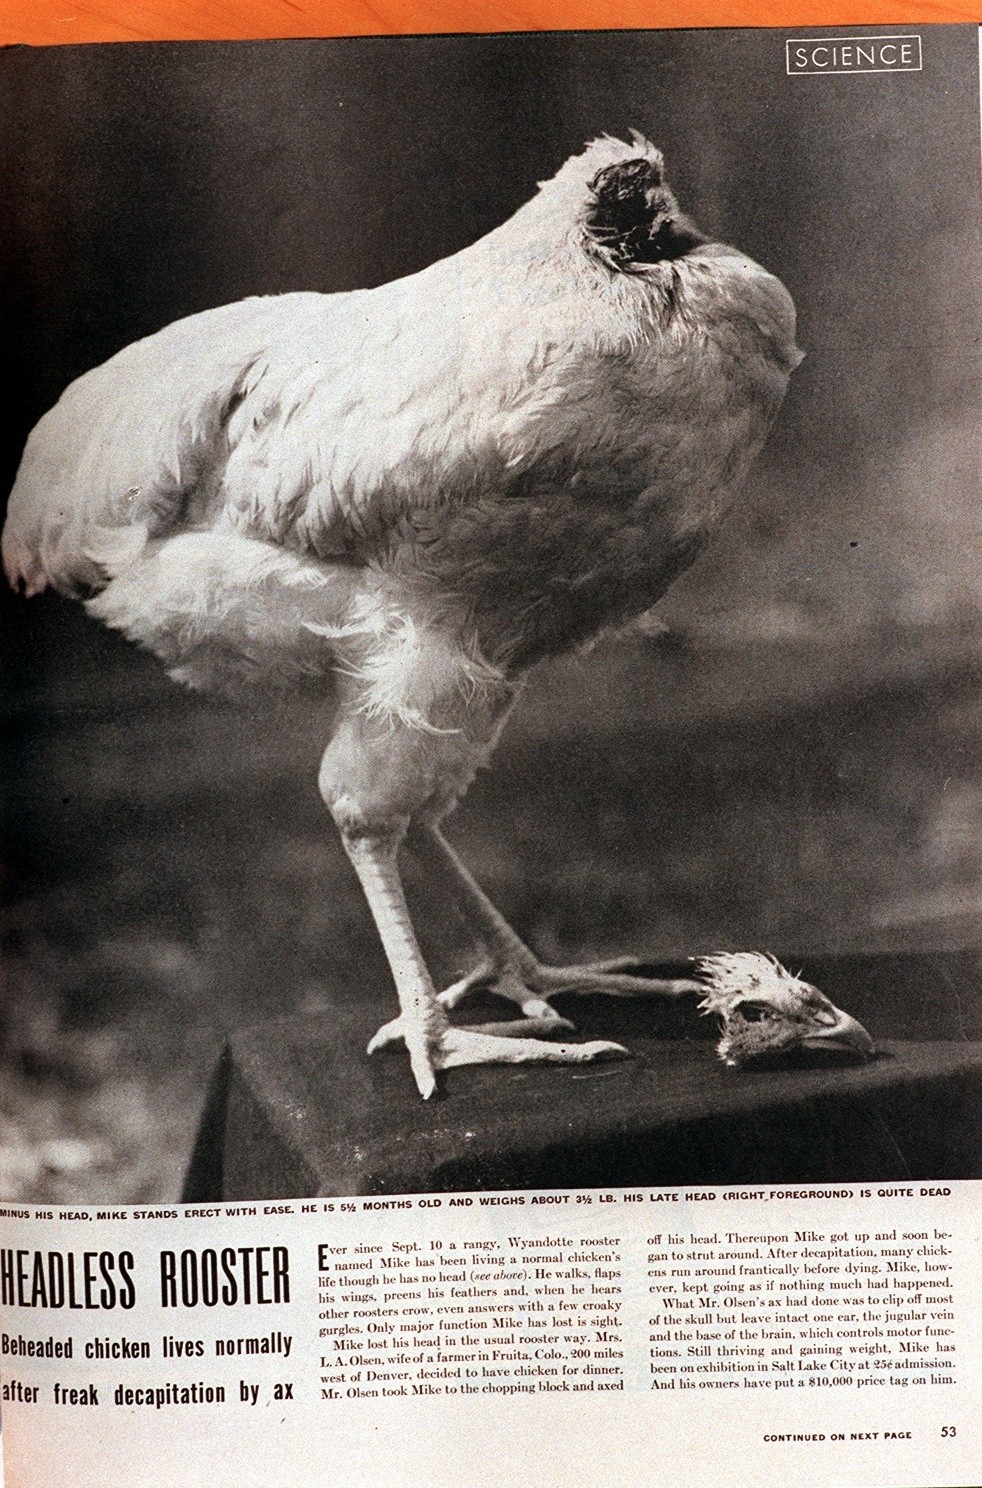 Πράγματι απίστευτο! Δείτε το κοτόπουλο που του έκοψαν το κεφάλι και έζησε… 18 μήνες! (Φωτογραφία)